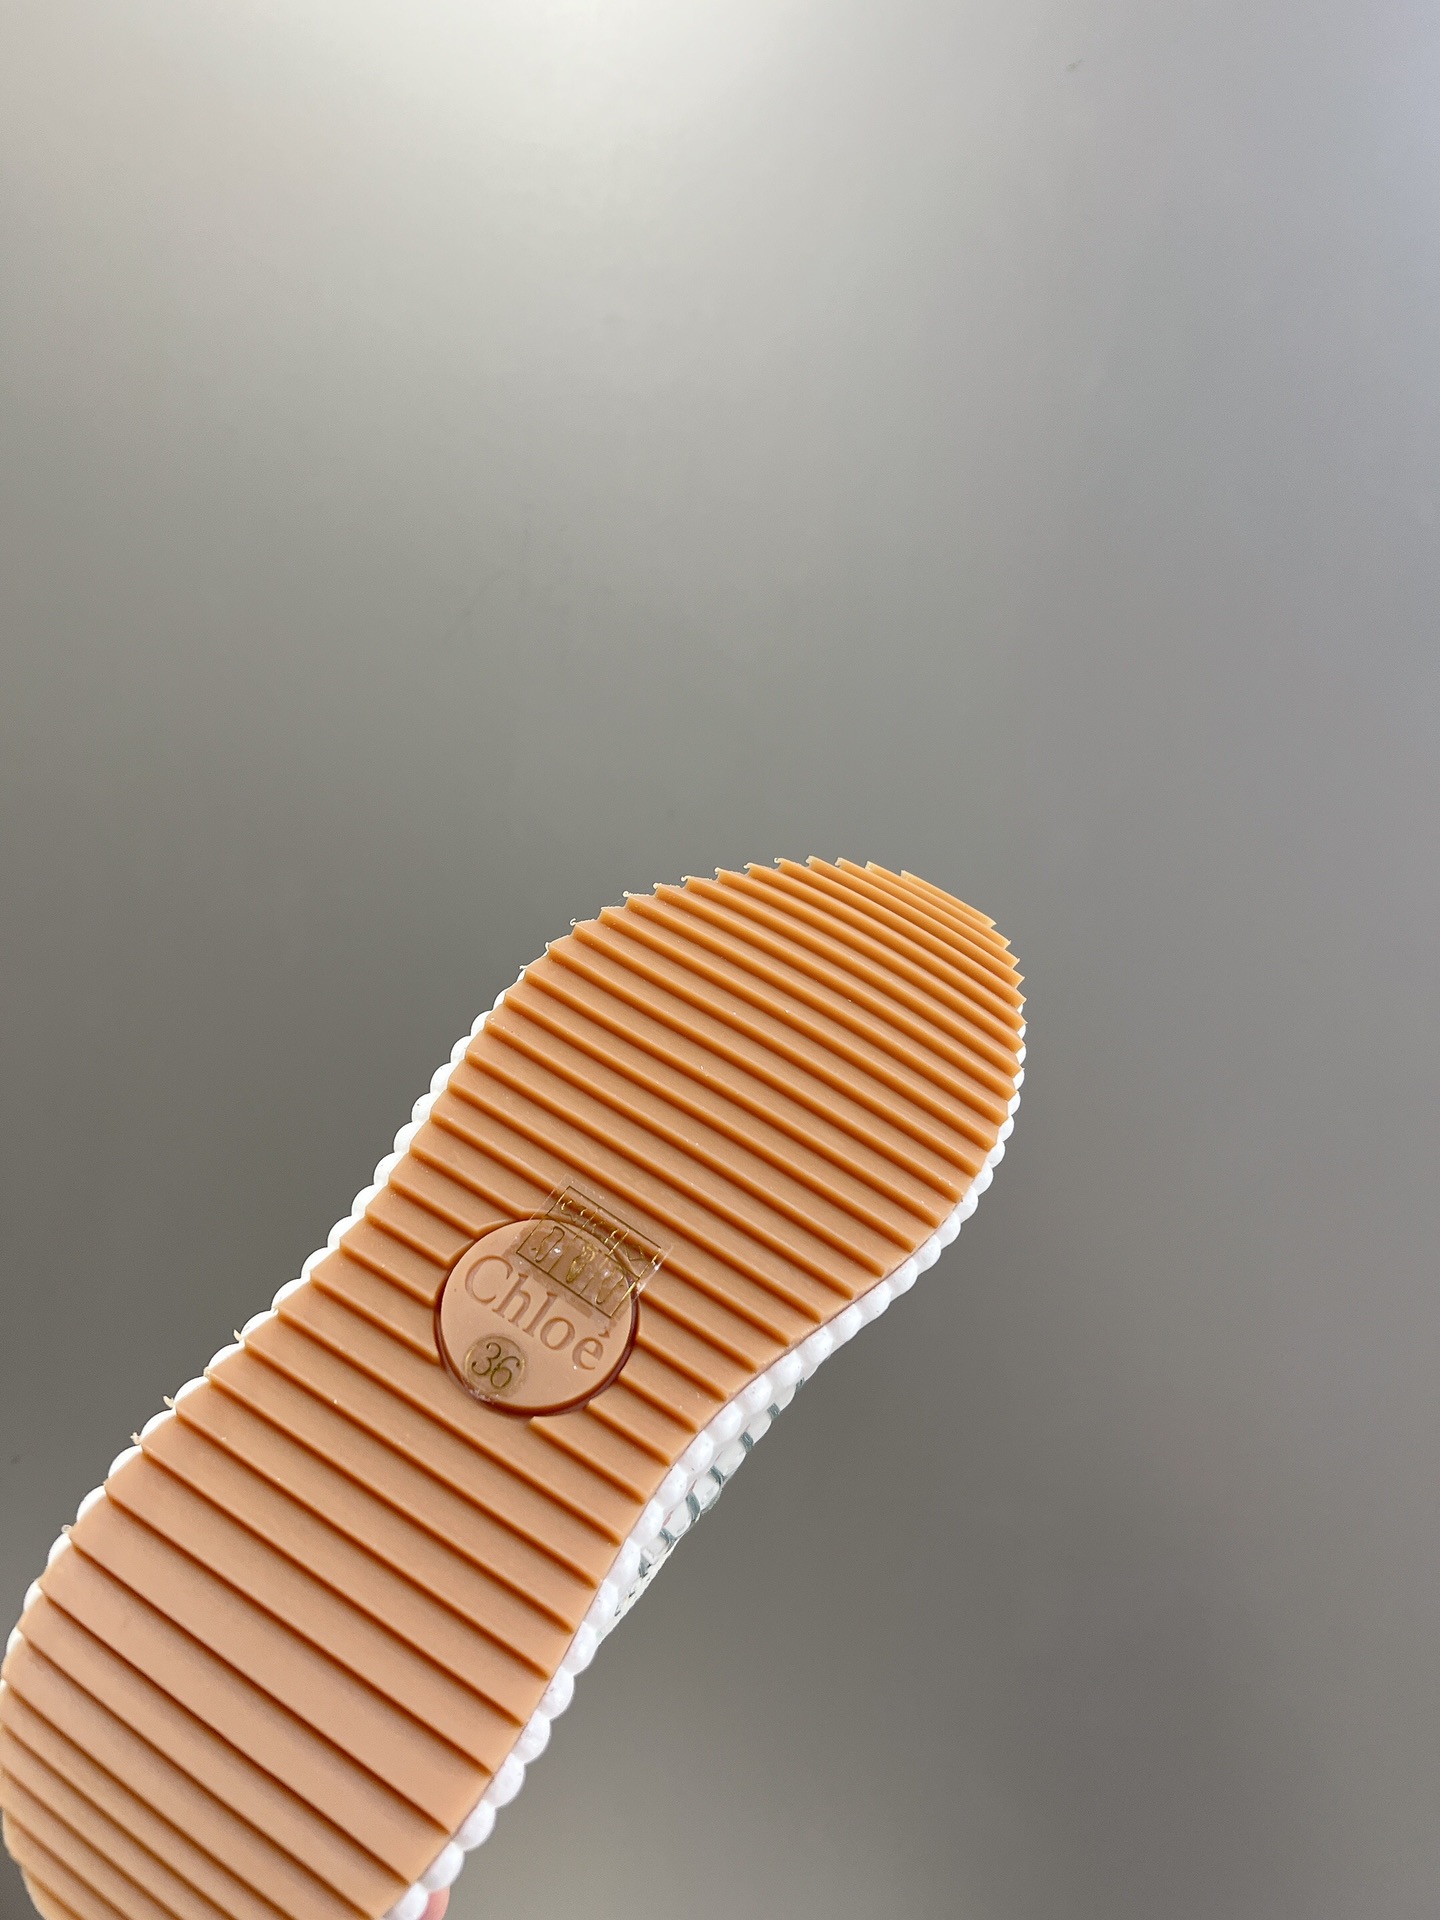 chloe克洛伊Namasneaker彩虹系列运动鞋孙怡宋茜明星同款原材料是可再生物料制作全手工缝马克线